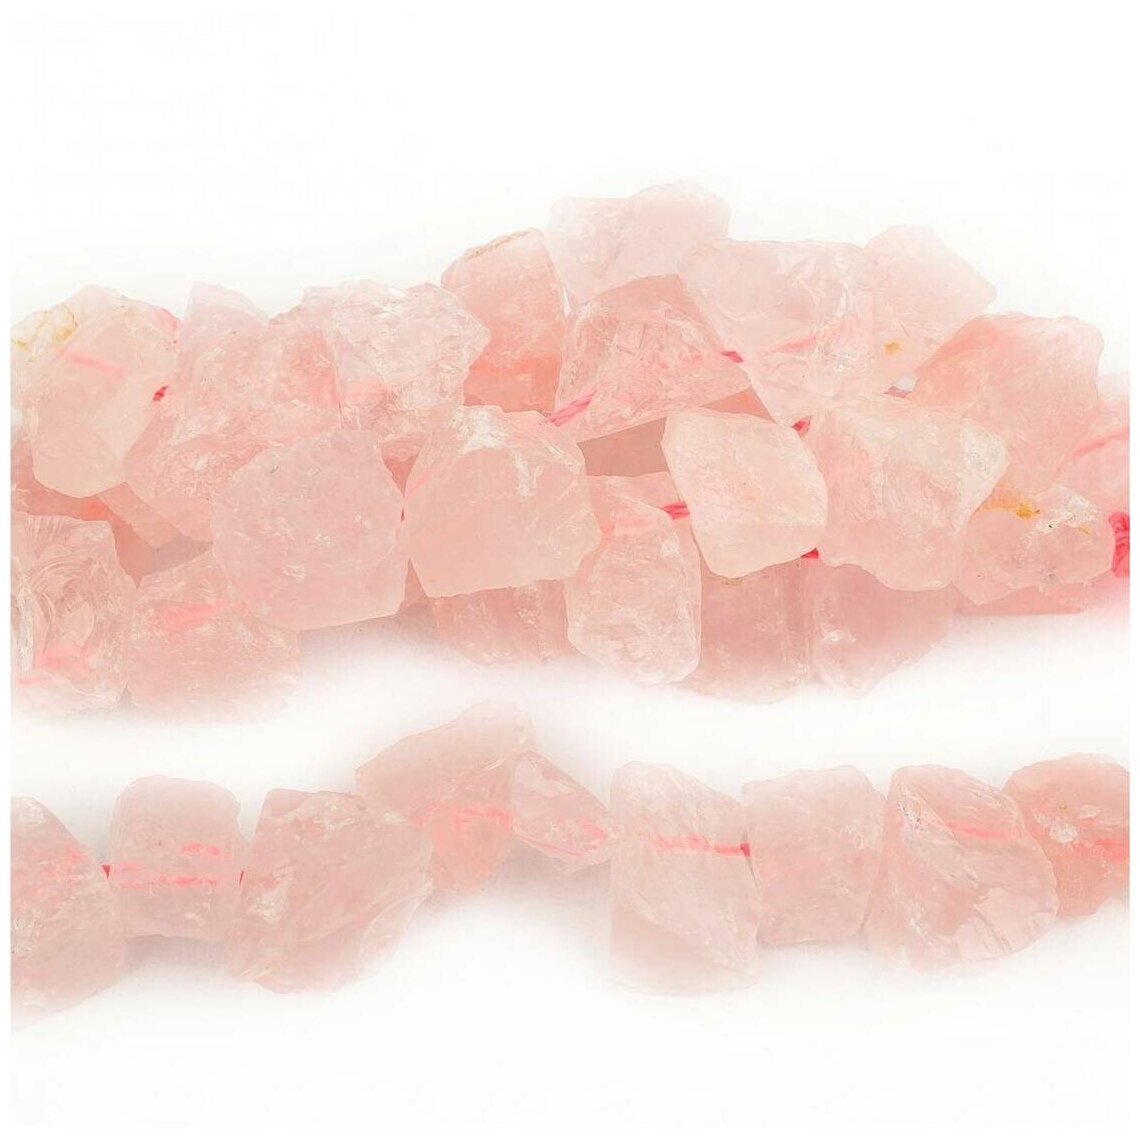 Каменные бусины из натурального камня - Кварц розовый наггетсы 15-25 мм